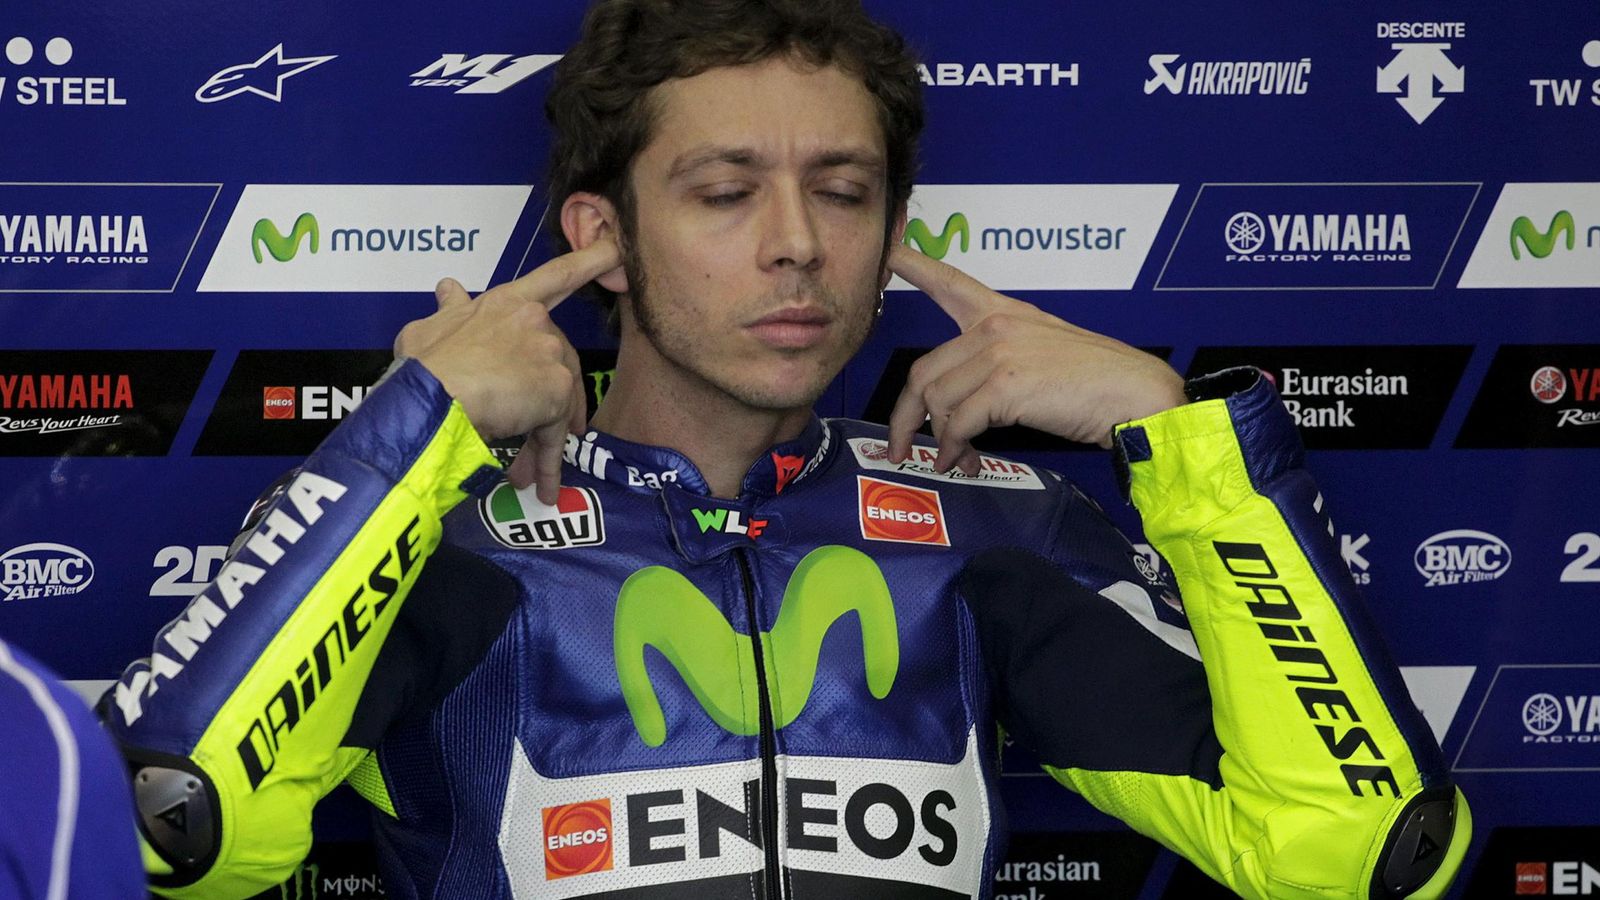 Foto: Rossi en su box durante el GP de Valencia (Reuters).